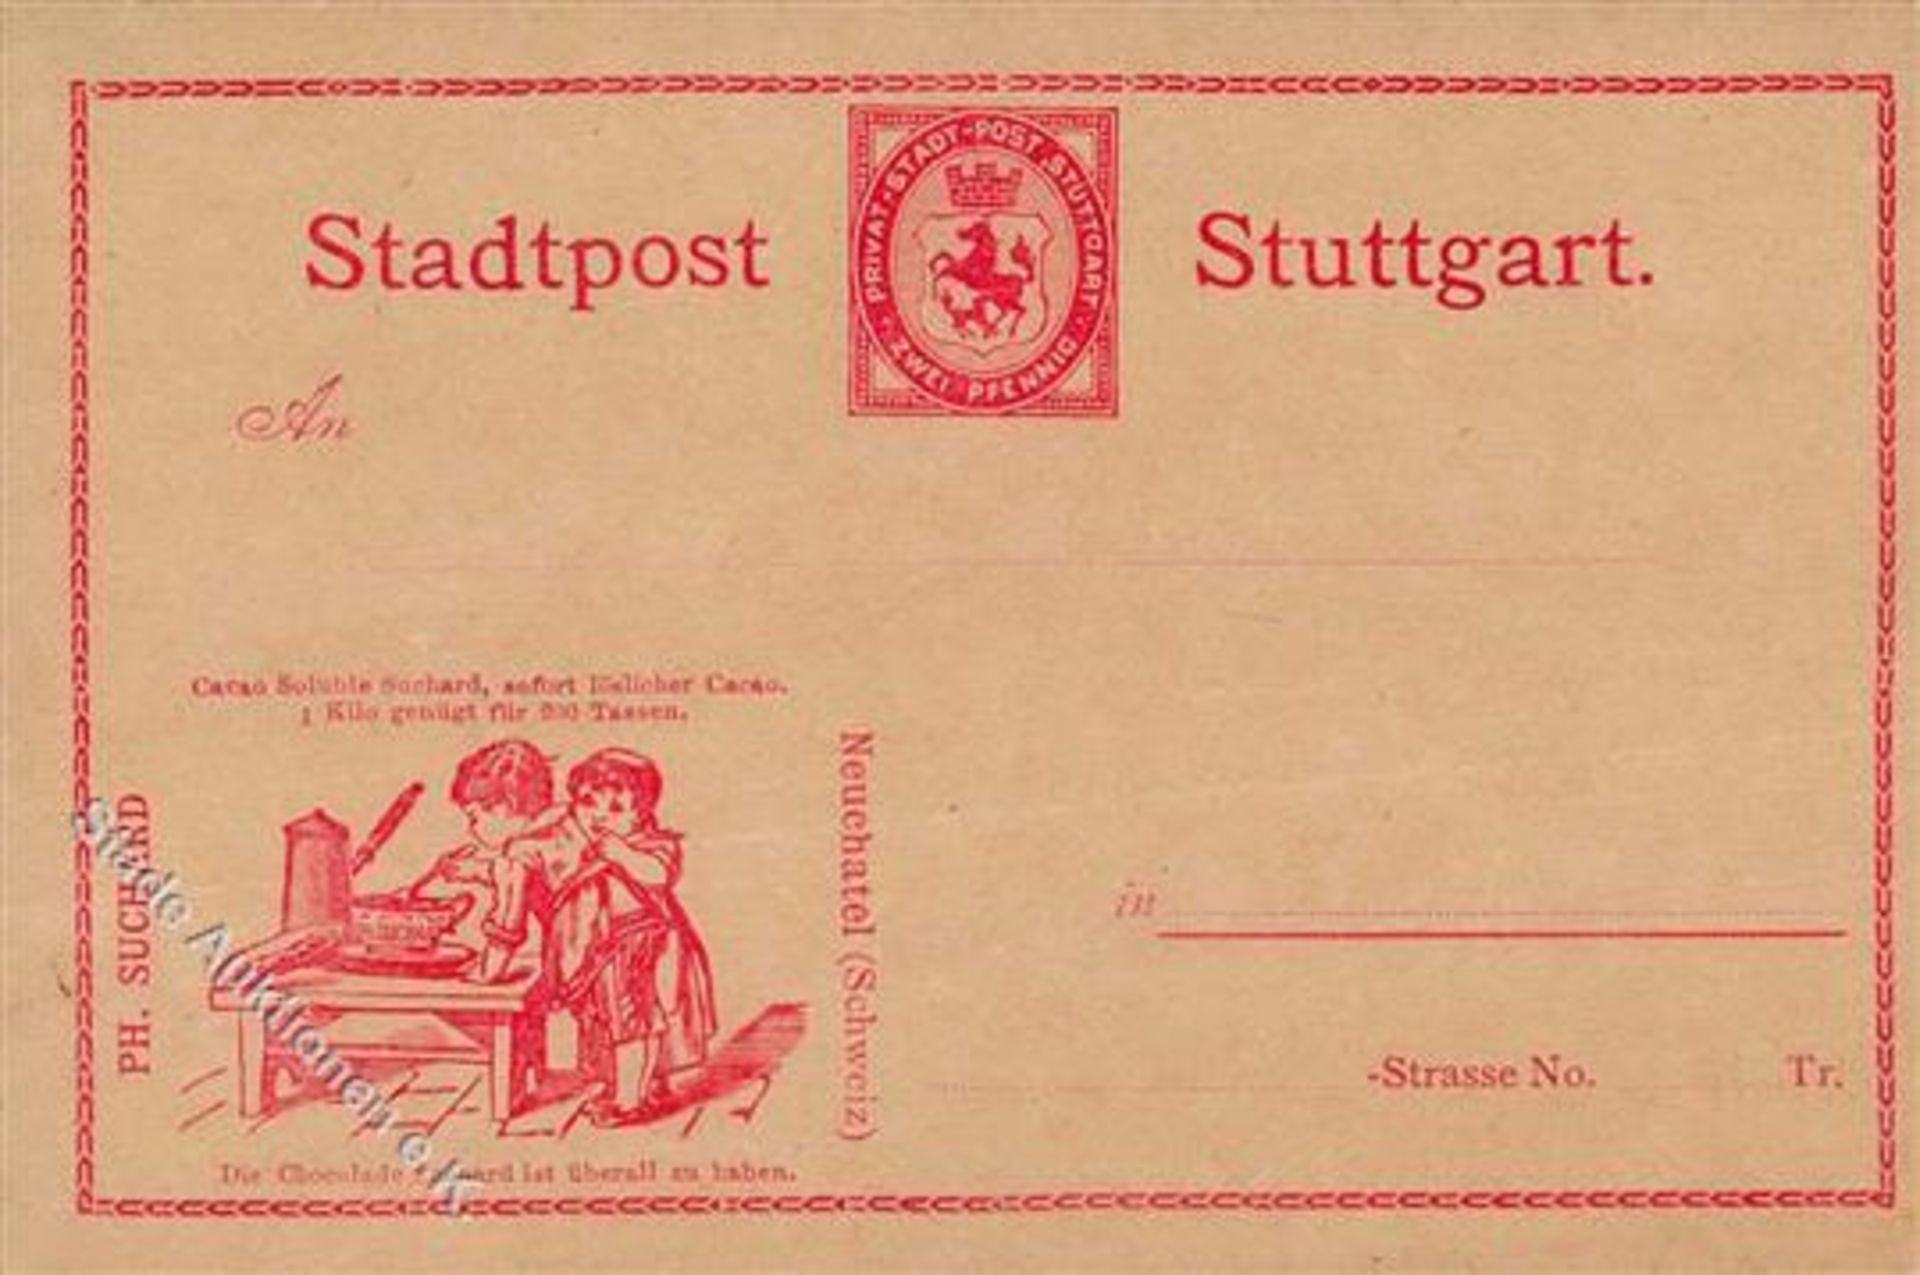 STADTPOST STUTTGART - 2 Pfg.-GSK SUCHARD IDieses Los wird in einer online-Auktion ohne Publikum